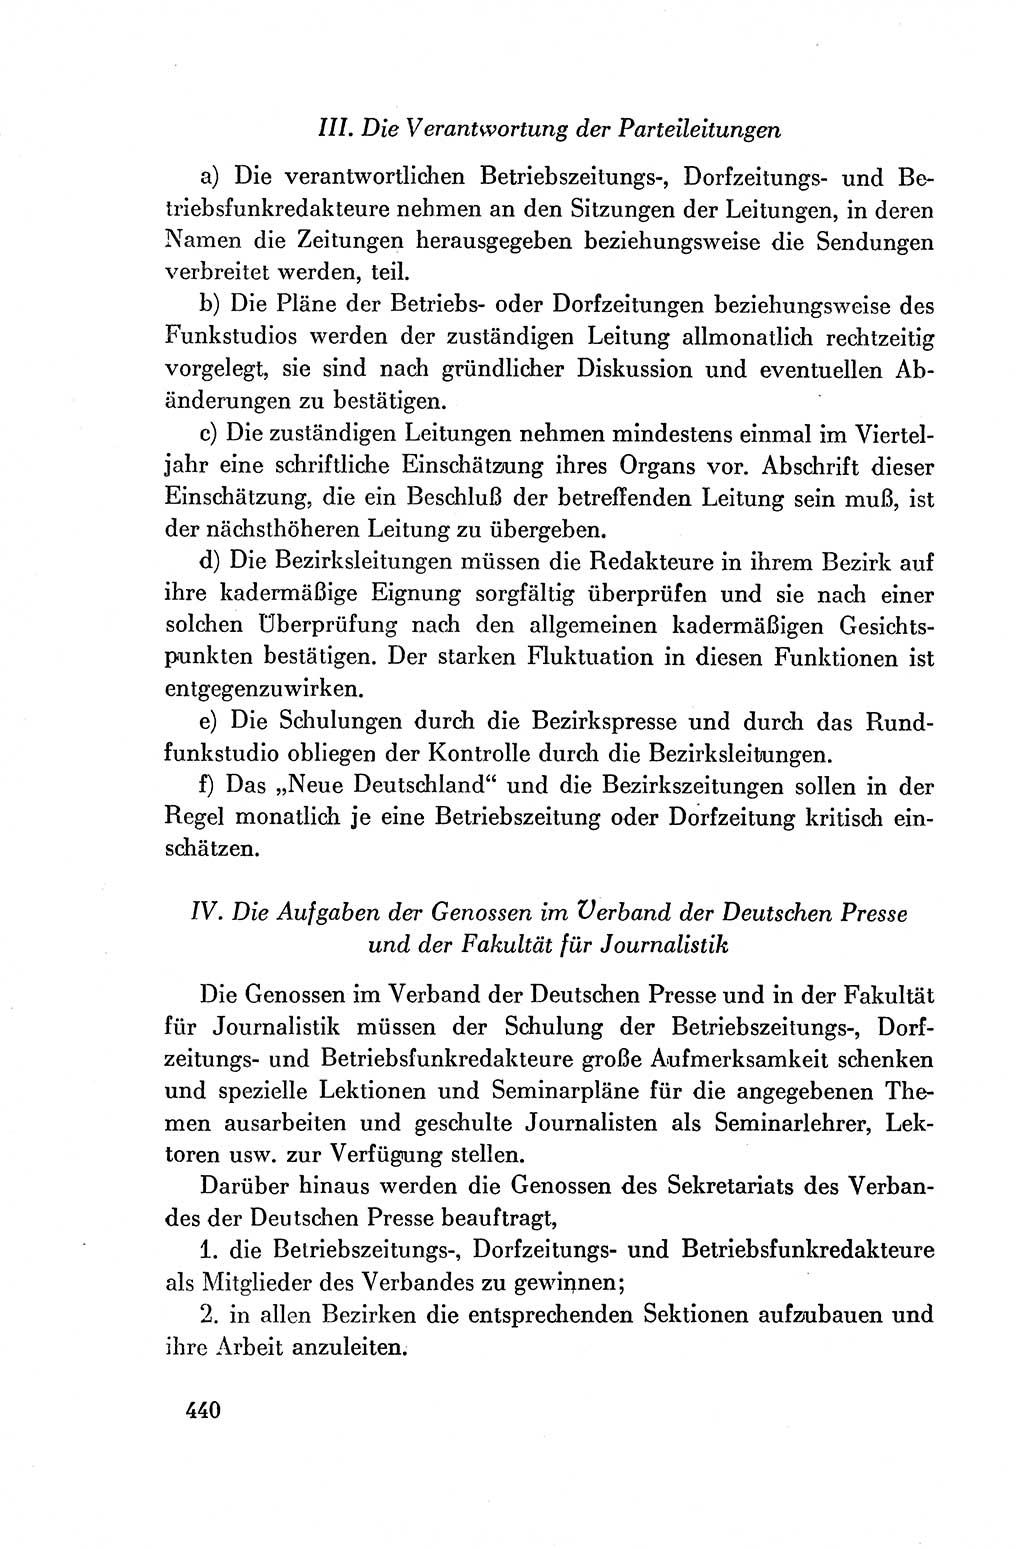 Dokumente der Sozialistischen Einheitspartei Deutschlands (SED) [Deutsche Demokratische Republik (DDR)] 1954-1955, Seite 440 (Dok. SED DDR 1954-1955, S. 440)